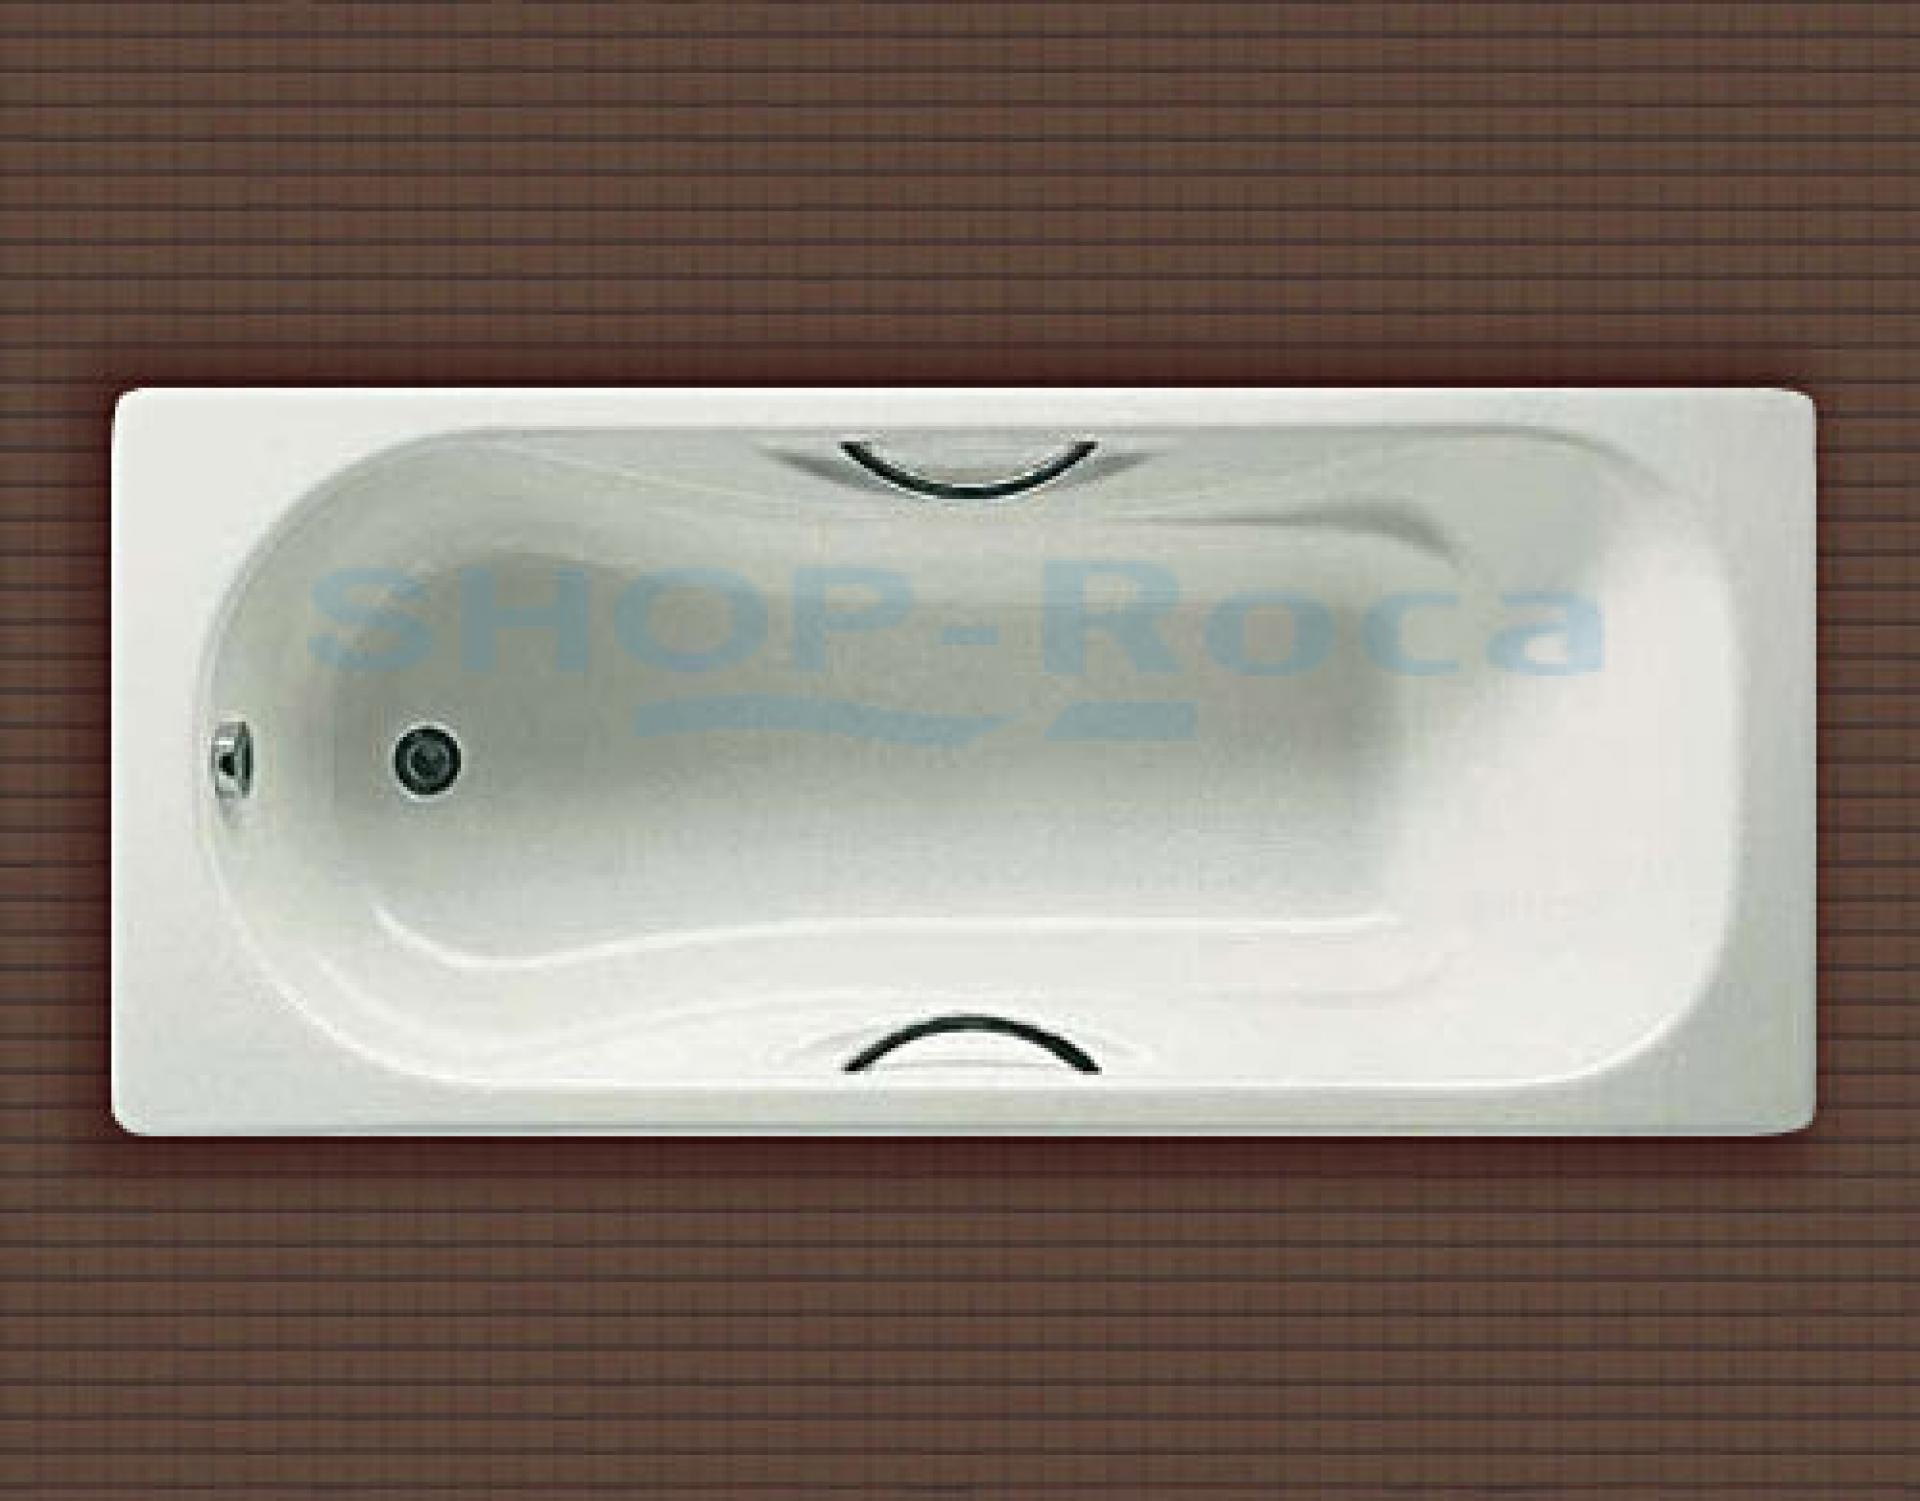 Фото: Чугунная ванна 170х75 Roca Malibu 23097000R с отверстиями для ручек Roca в каталоге